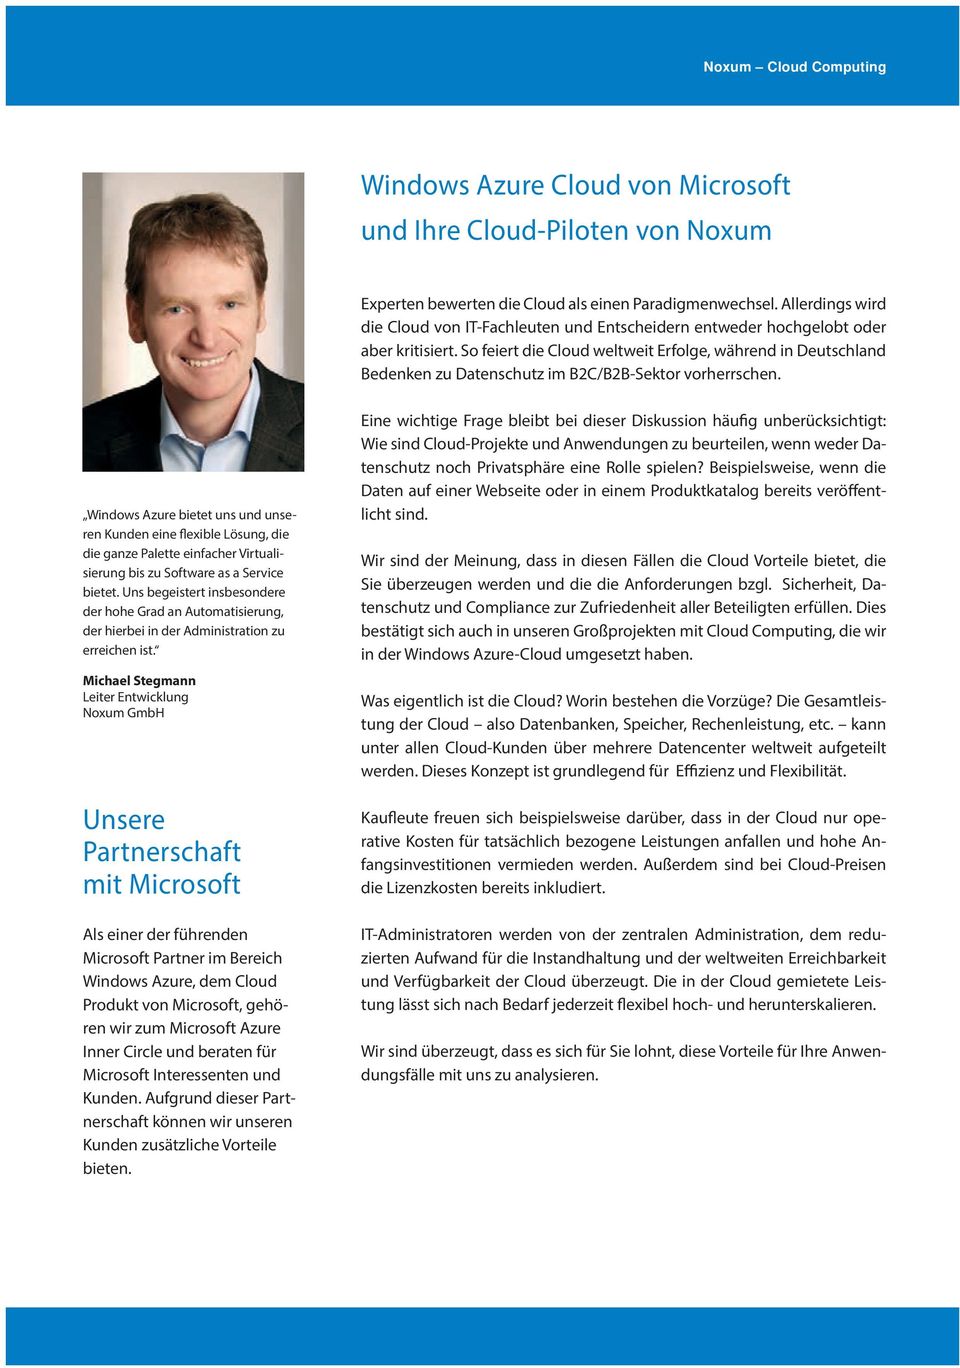 So feiert die Cloud weltweit Erfolge, während in Deutschland Bedenken zu Datenschutz im B2C/B2B-Sektor vorherrschen.